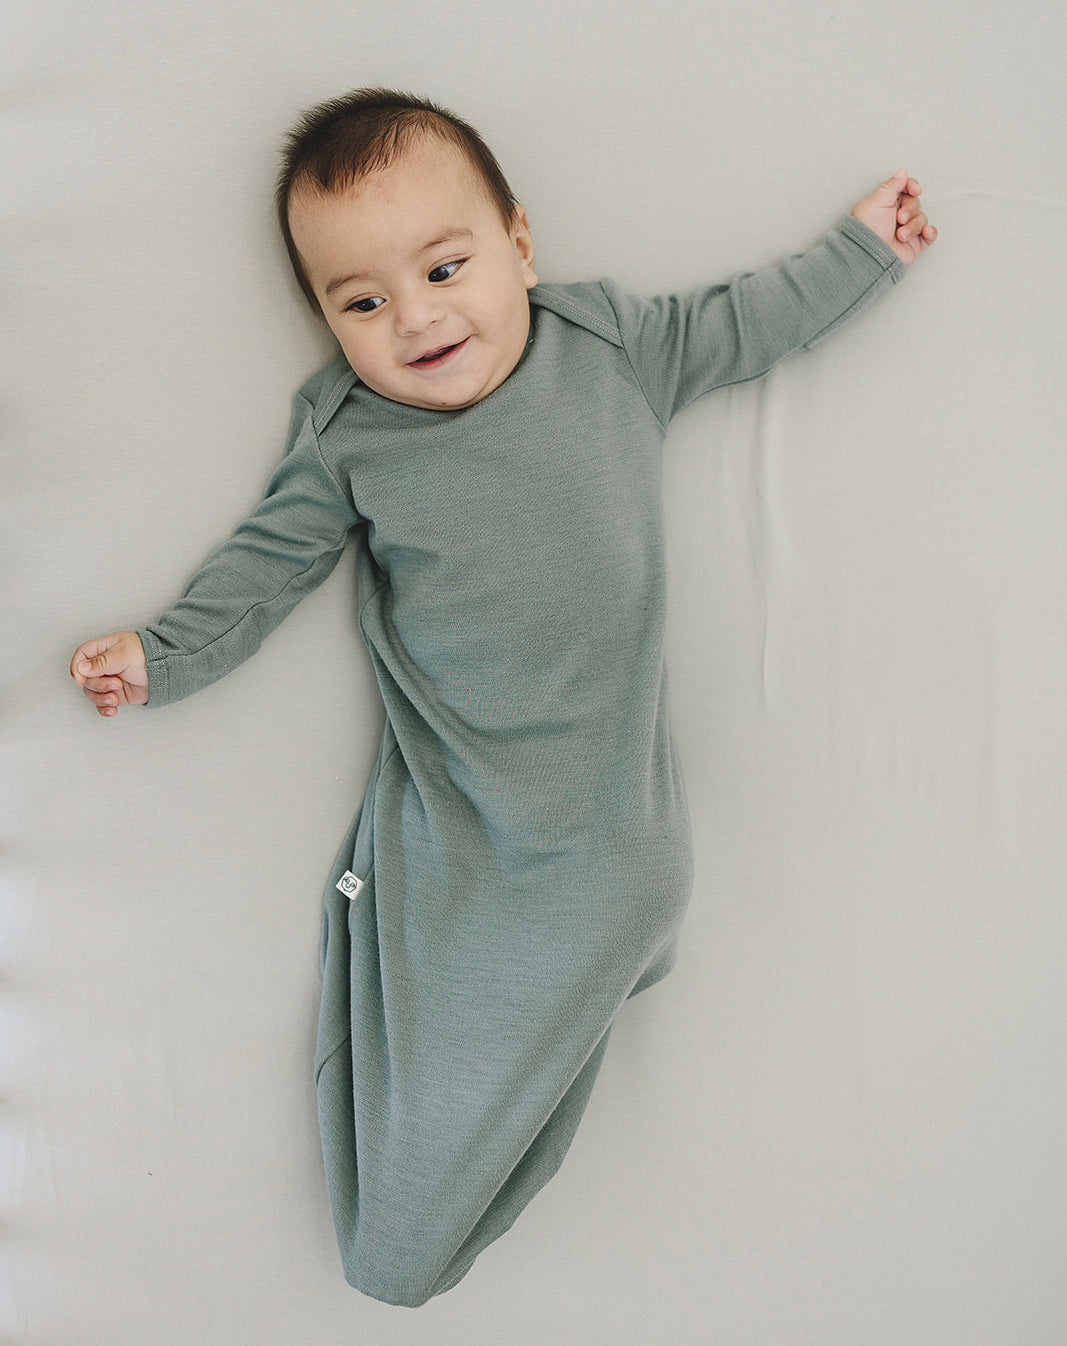 Baby Gown, Merino Wool, 0-6 Months, Sage